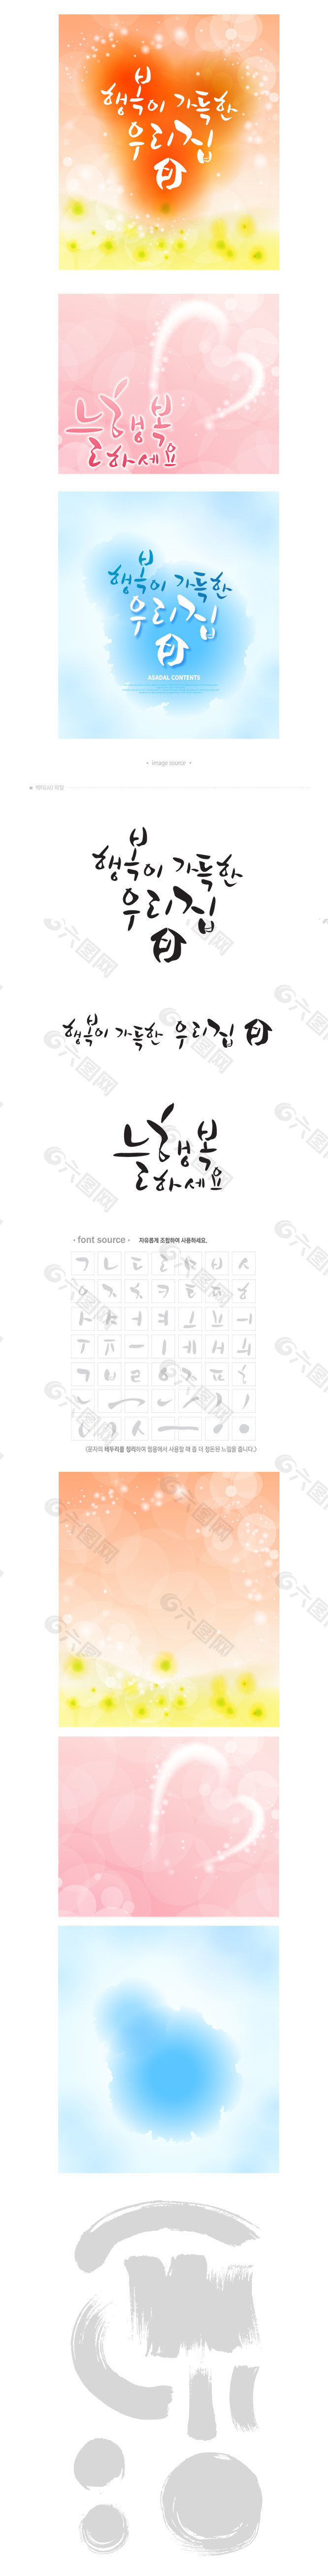 韩文字体水墨效果